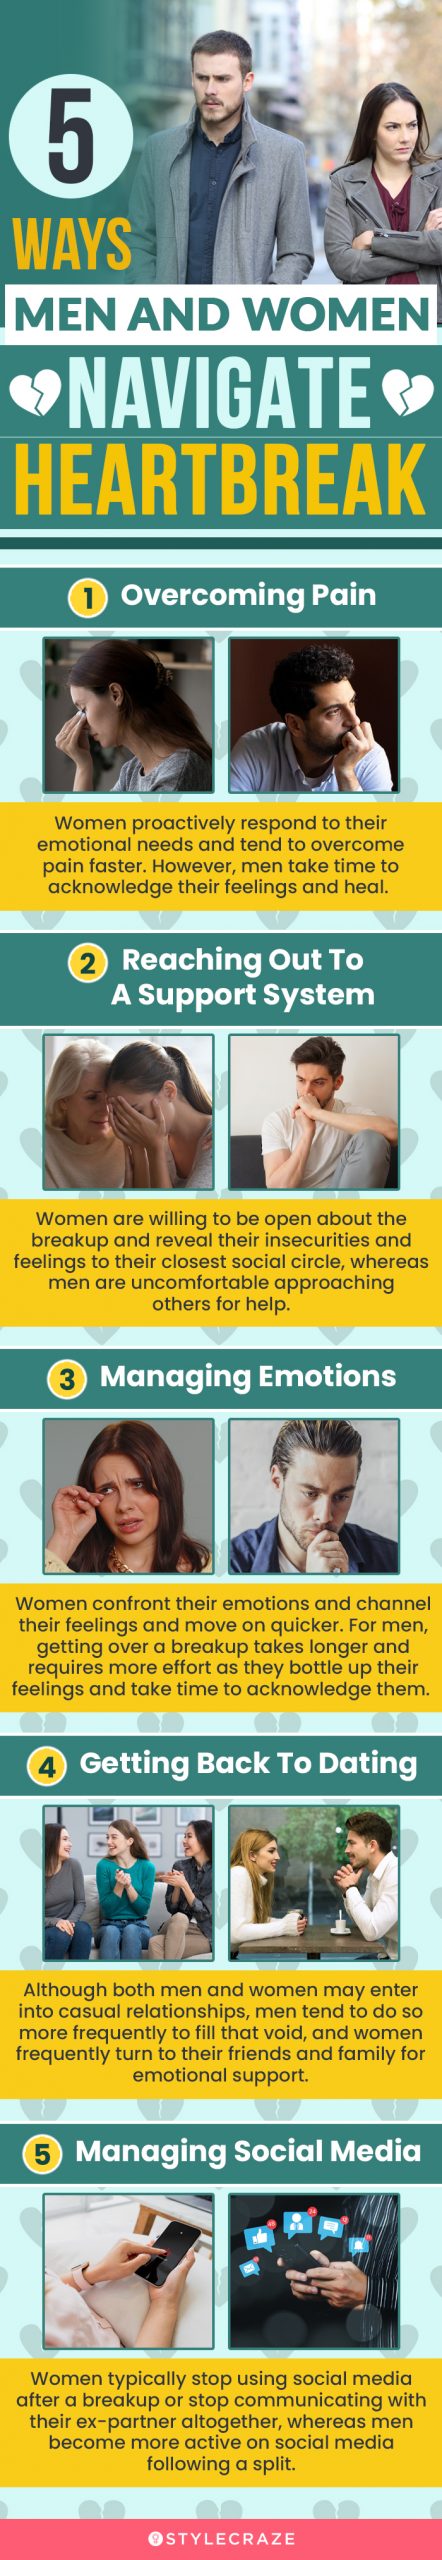 5 ways men and women navigate heartbreak (infographic)